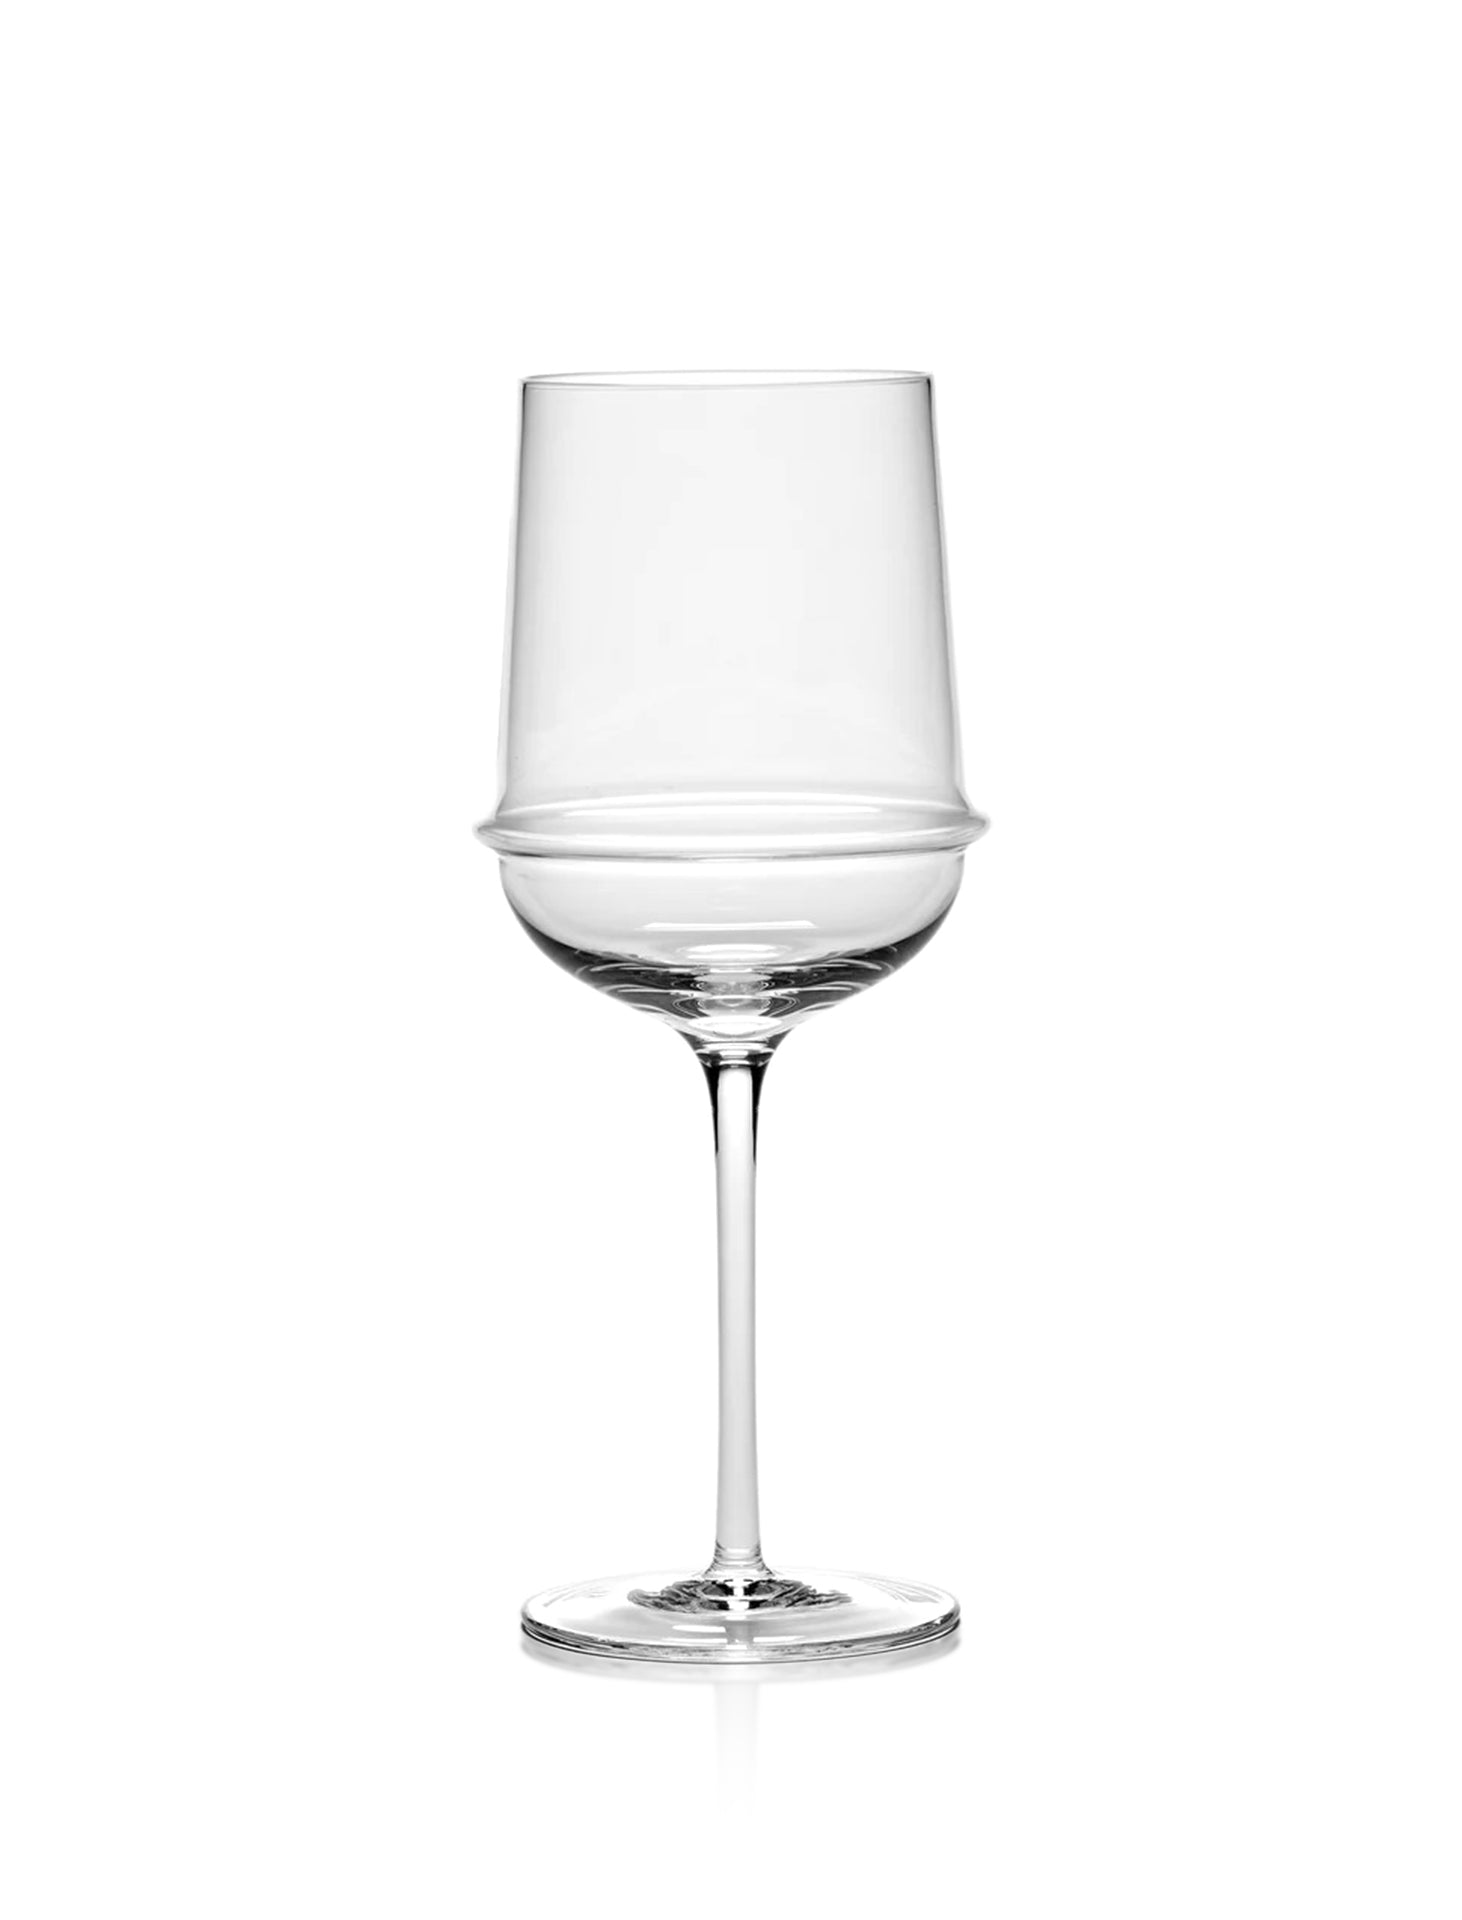 Kelly Wearstler Dune White Wine Glass, Set of 4